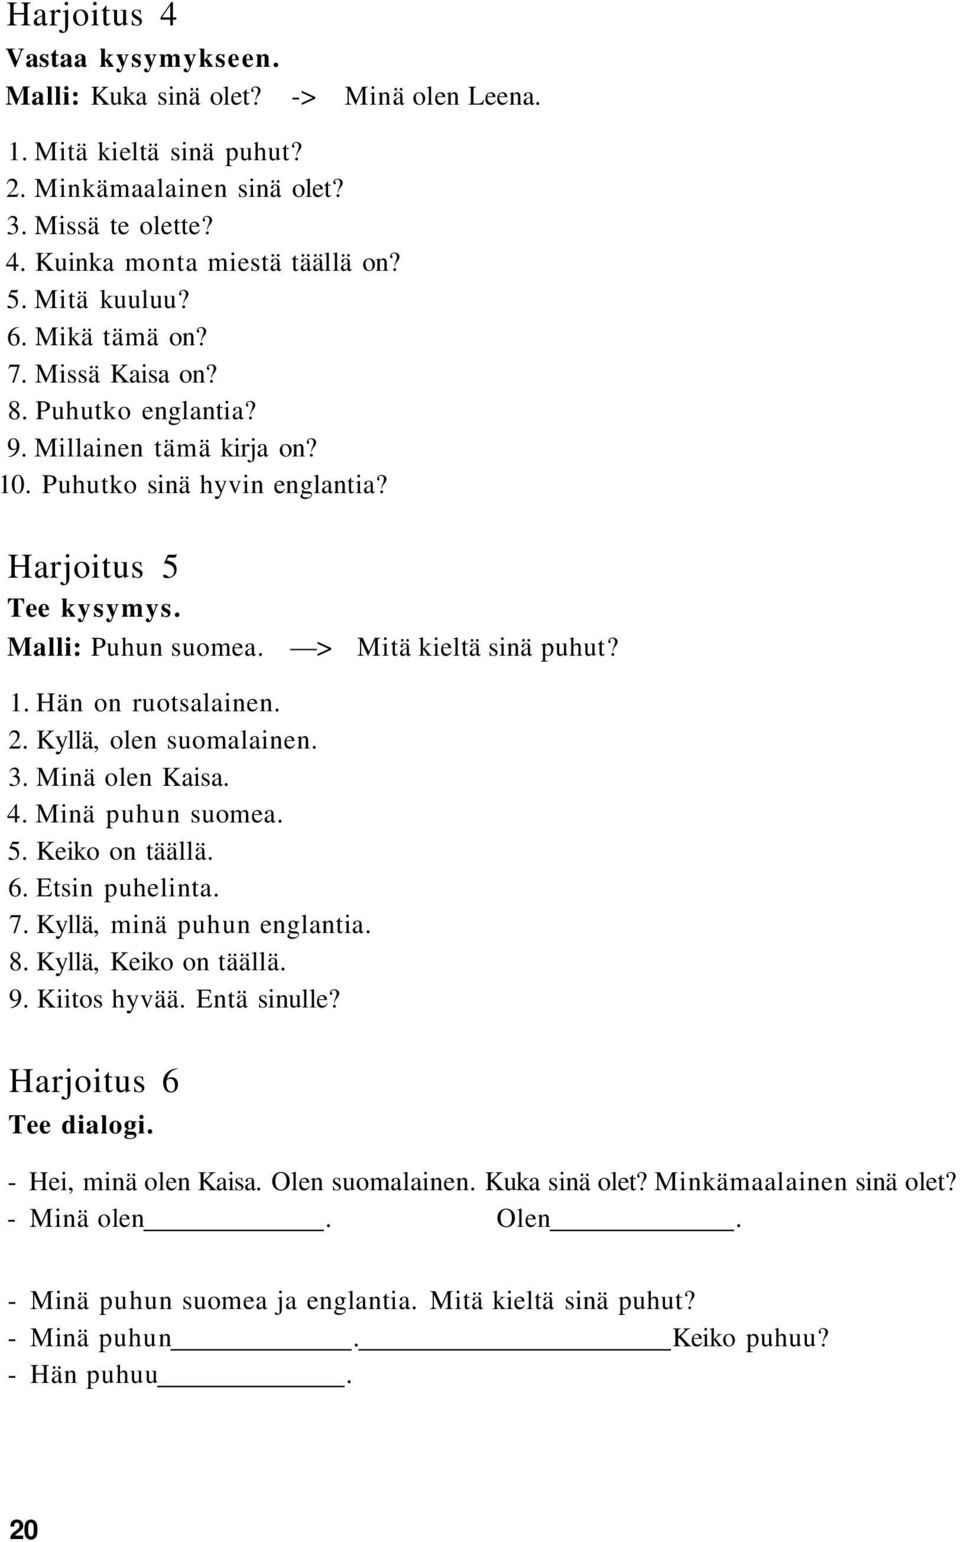 2. Kyllä, olen suomalainen. 3. Minä olen Kaisa. 4. Minä puhun suomea. 5. Keiko on täällä. 6. Etsin puhelinta. 7. Kyllä, minä puhun englantia. 8. Kyllä, Keiko on täällä. 9. Kiitos hyvää. Entä sinulle?